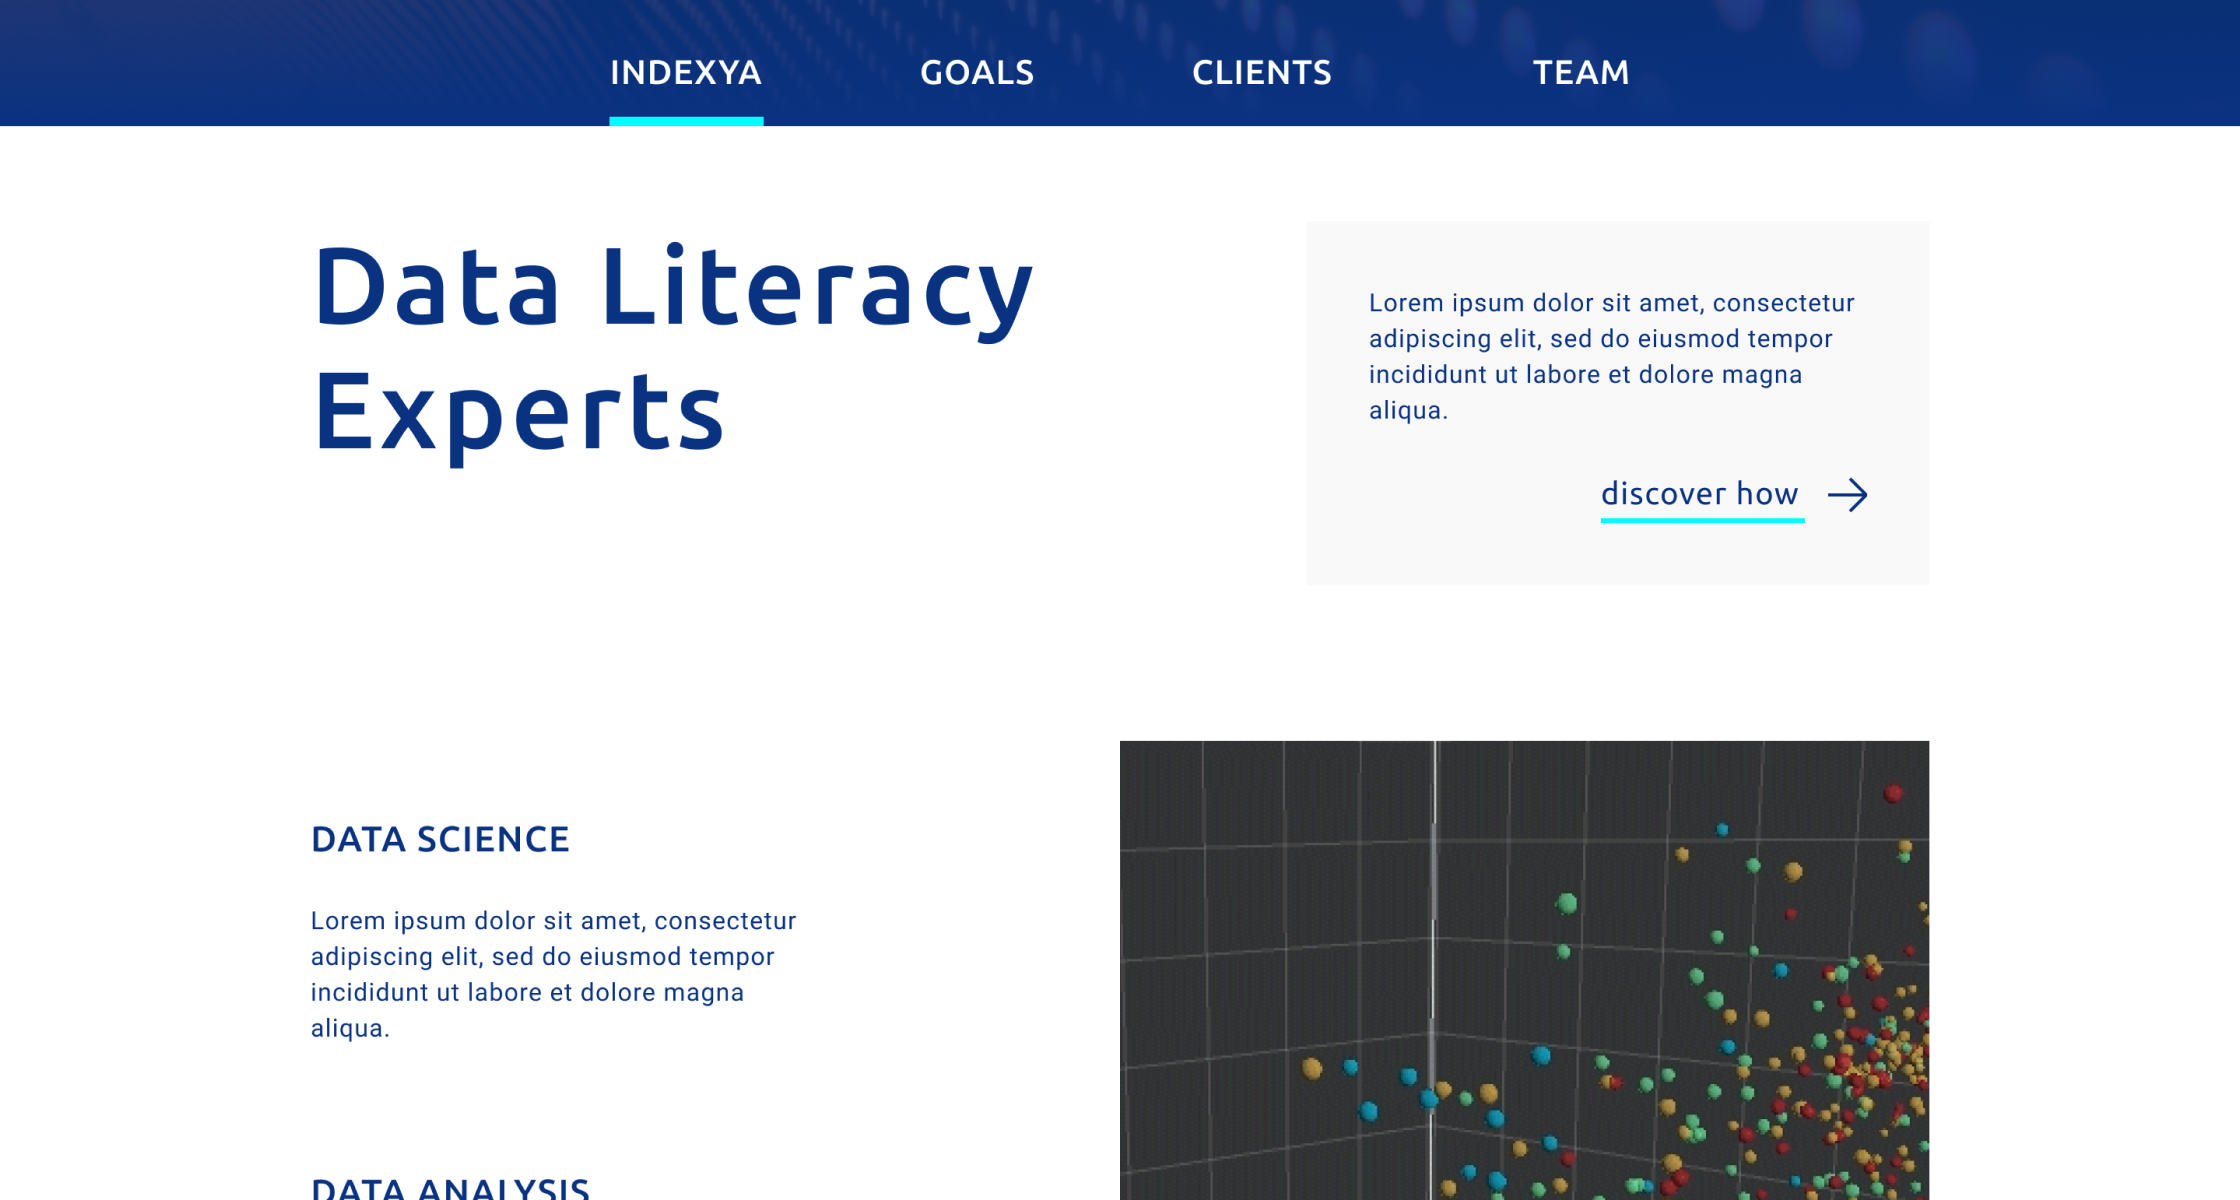 hedron design indexya website data literacy ui mockup